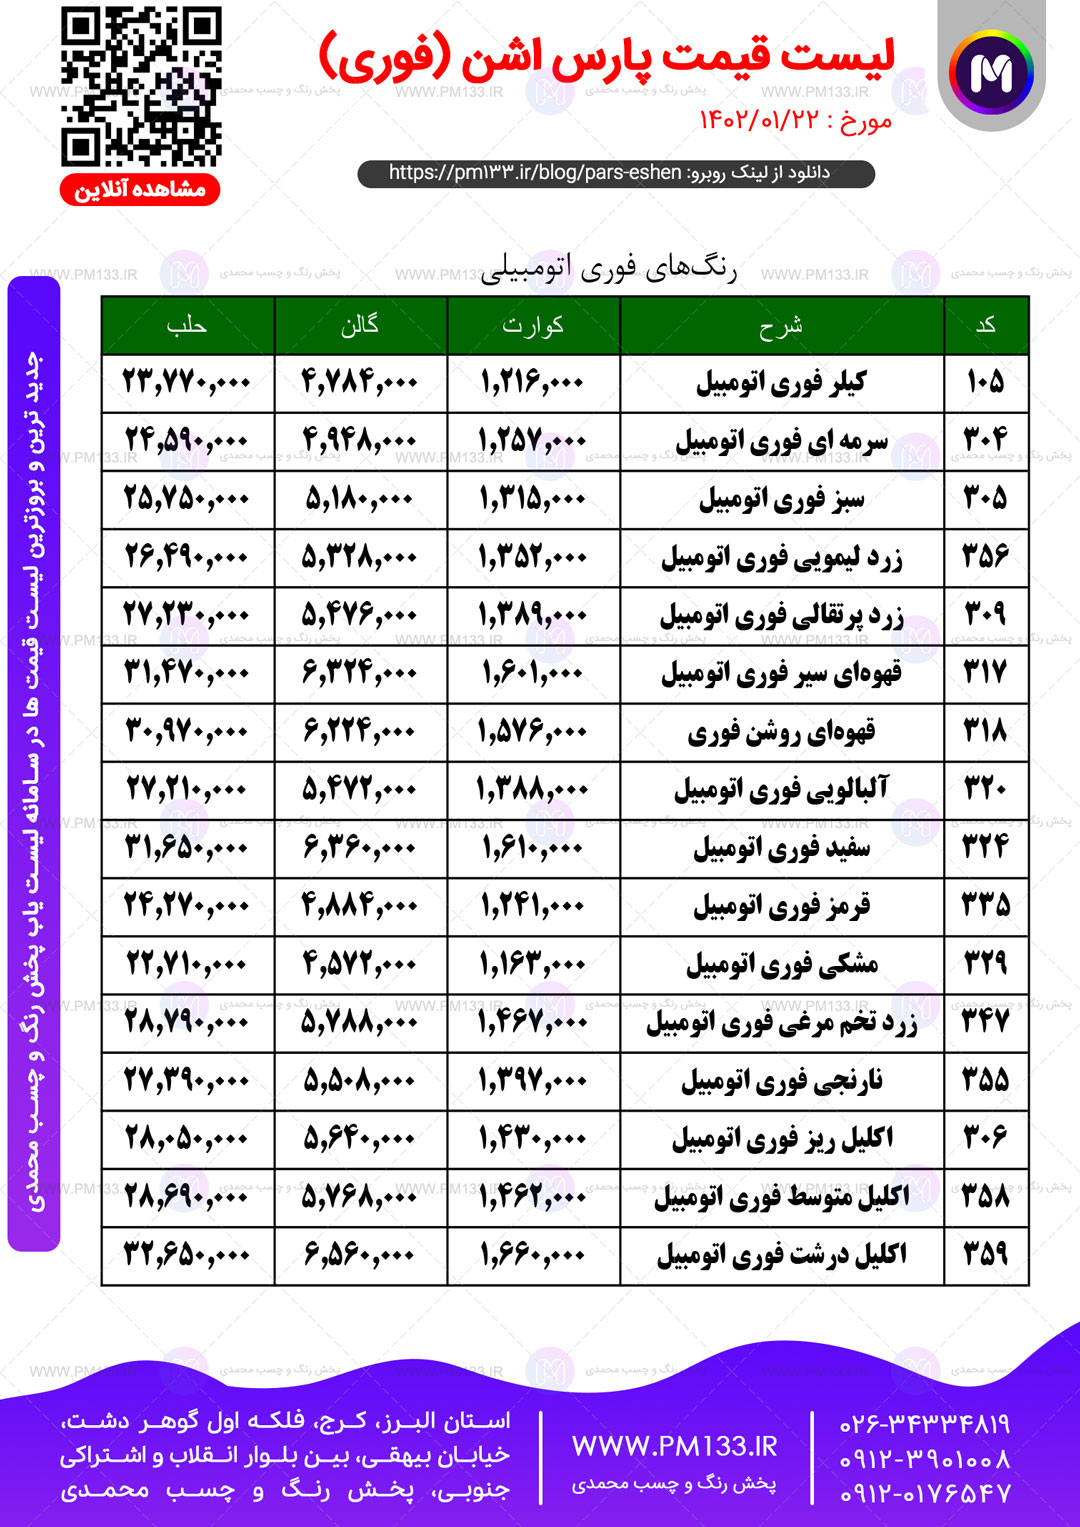 لیست قیمت پارس اشن مورخ 22-01-1402 صفحه3